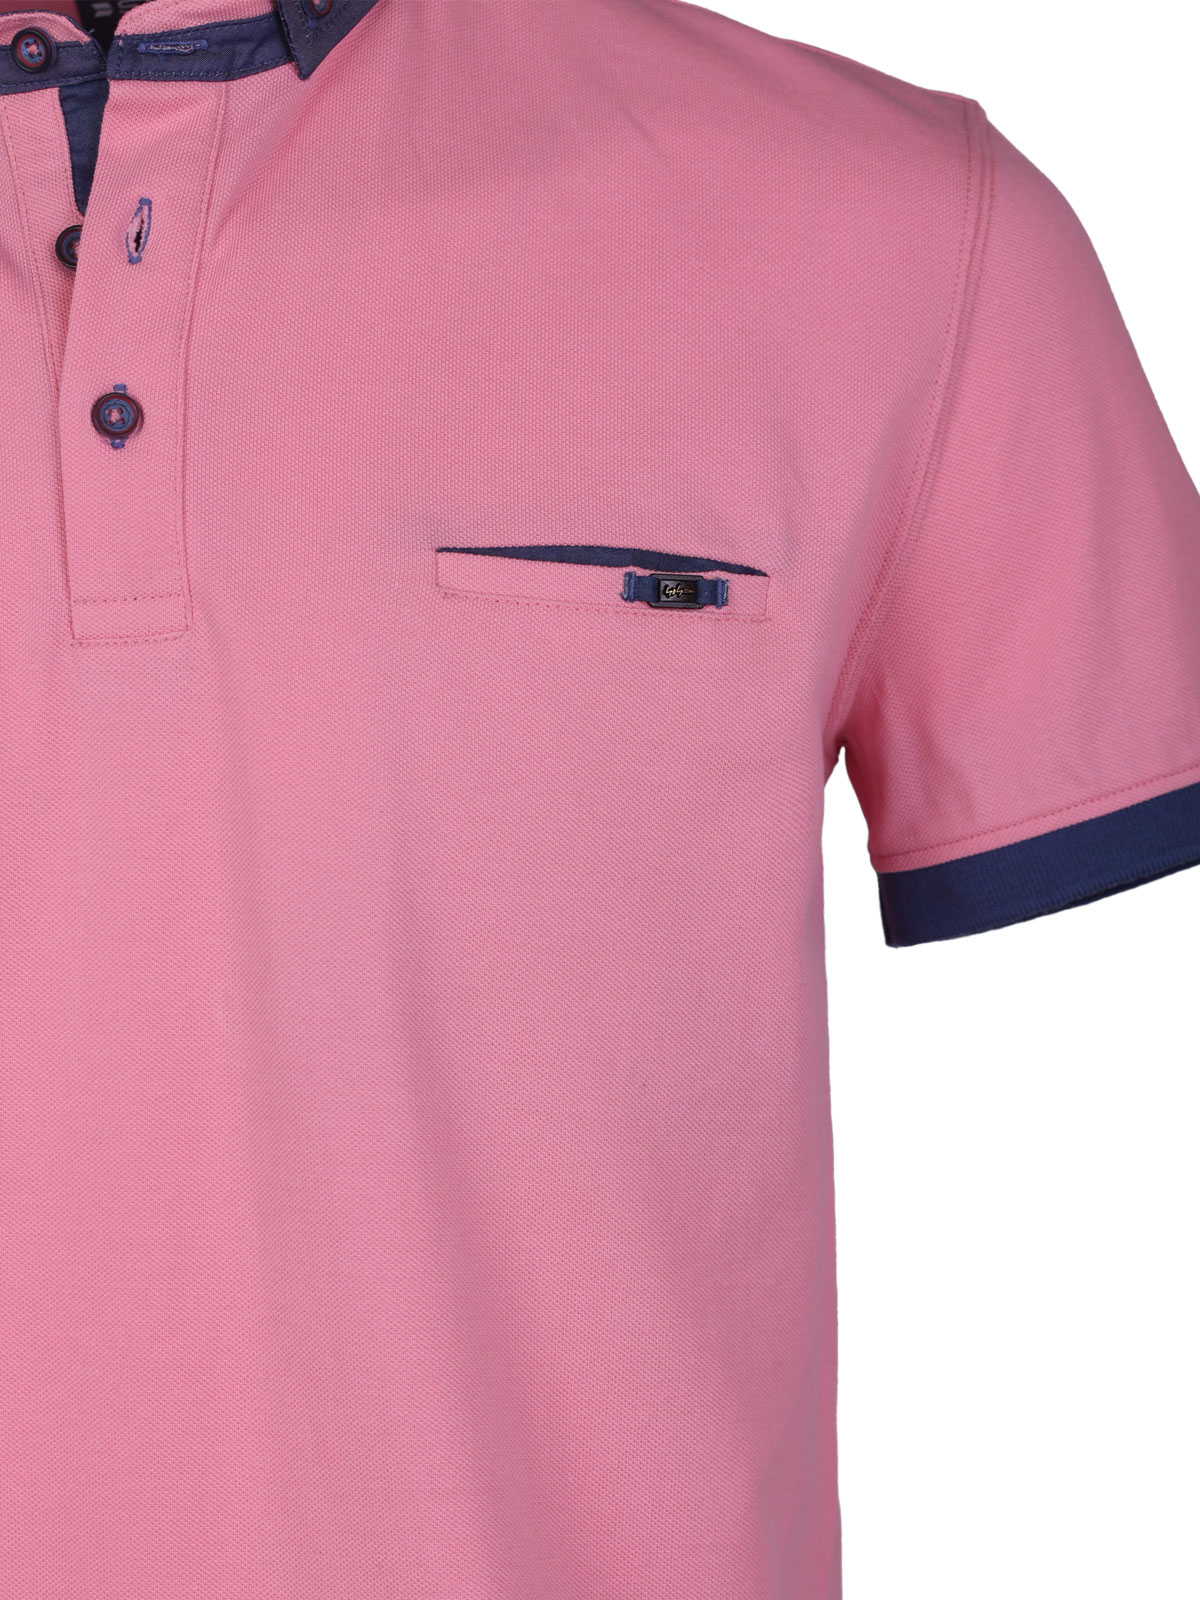 Bluza roz cu guler albastru denim - 93430 € 42.74 img3